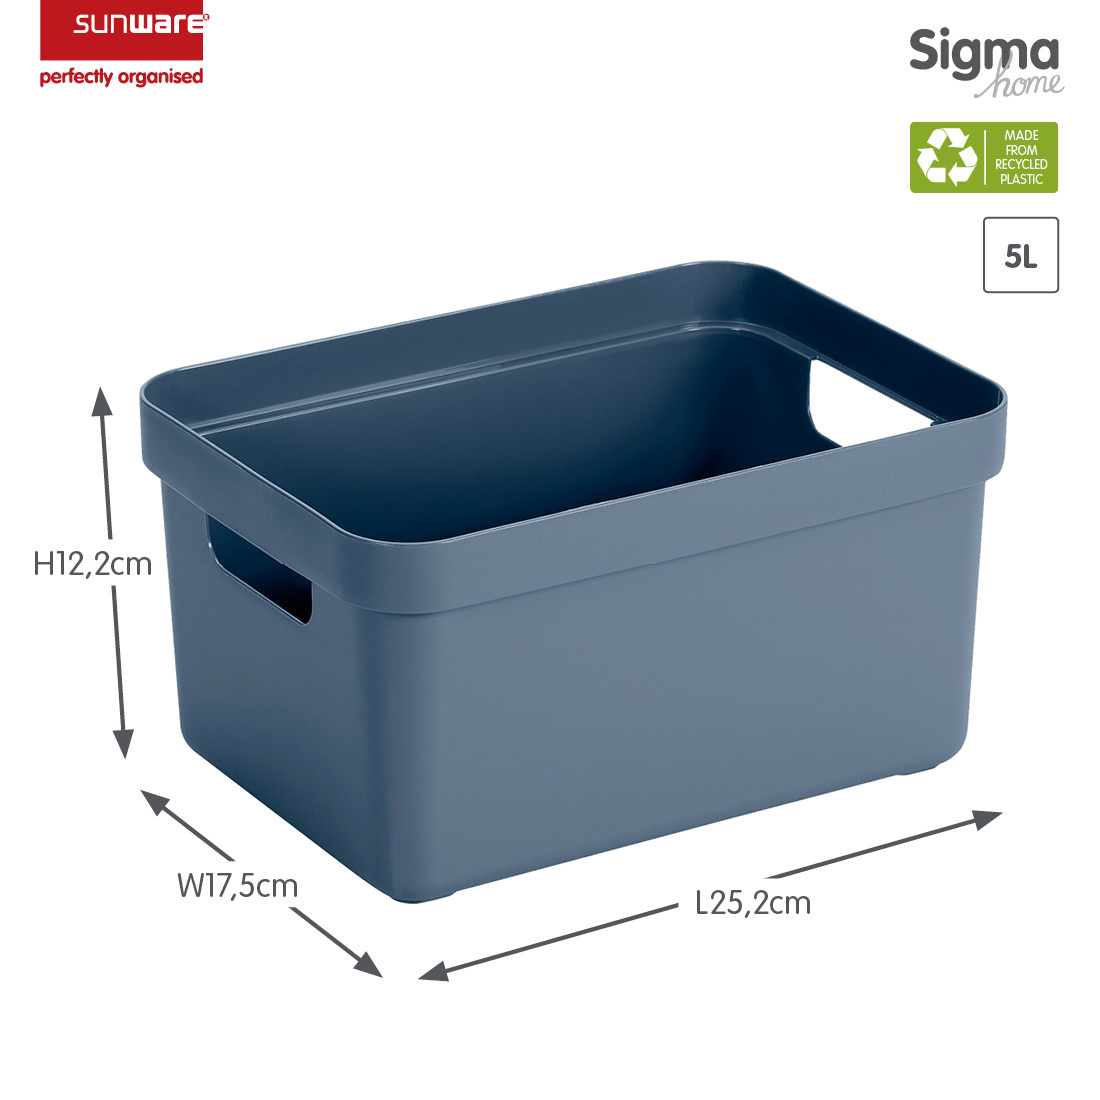 Sigma home Aufbewahrungsbox 5L dunkel blaugrau